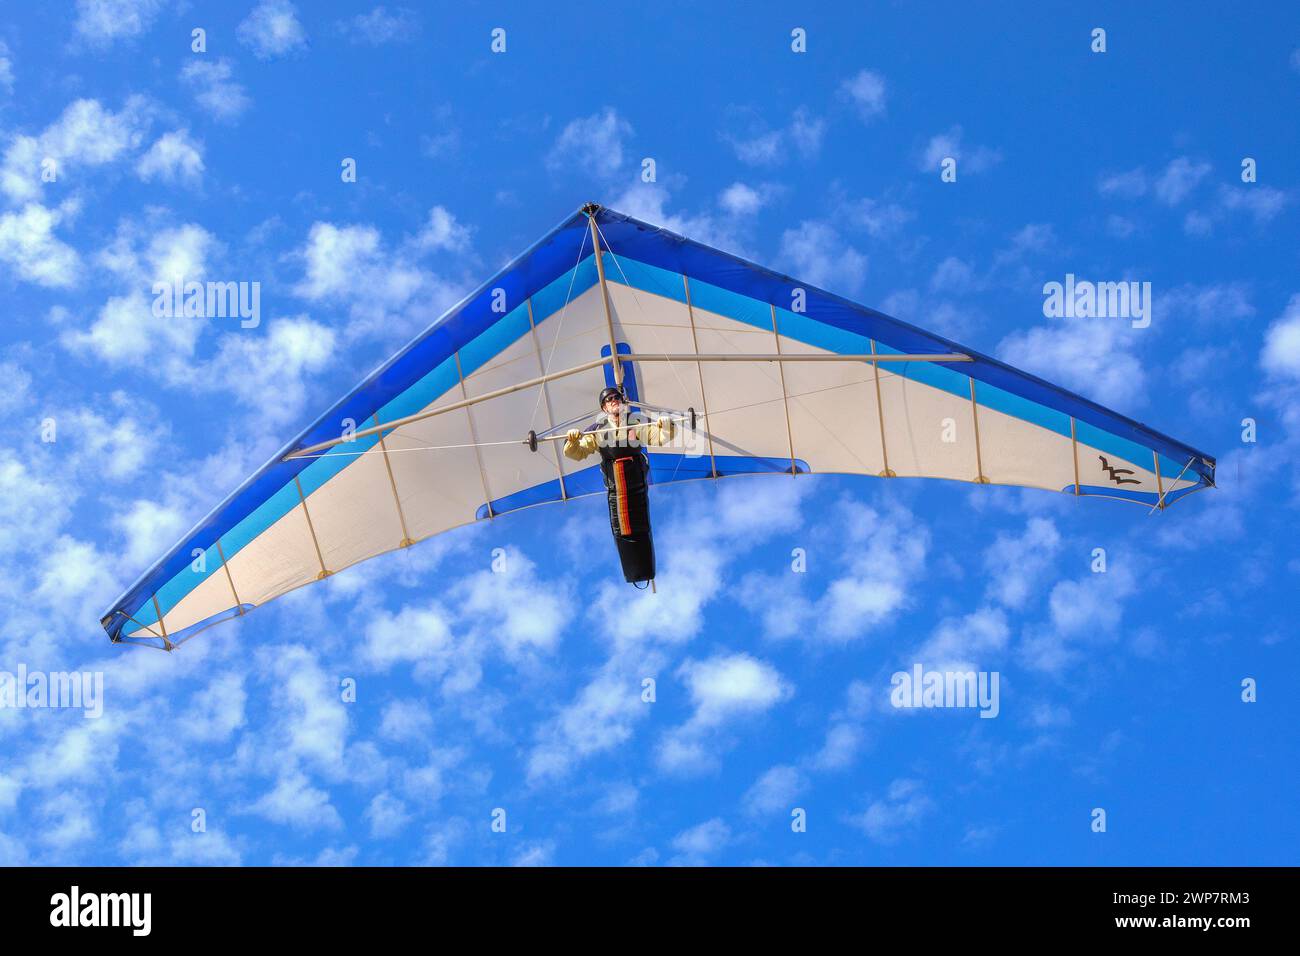 Hanggliding through the sky in San Diego, California Stock Photo